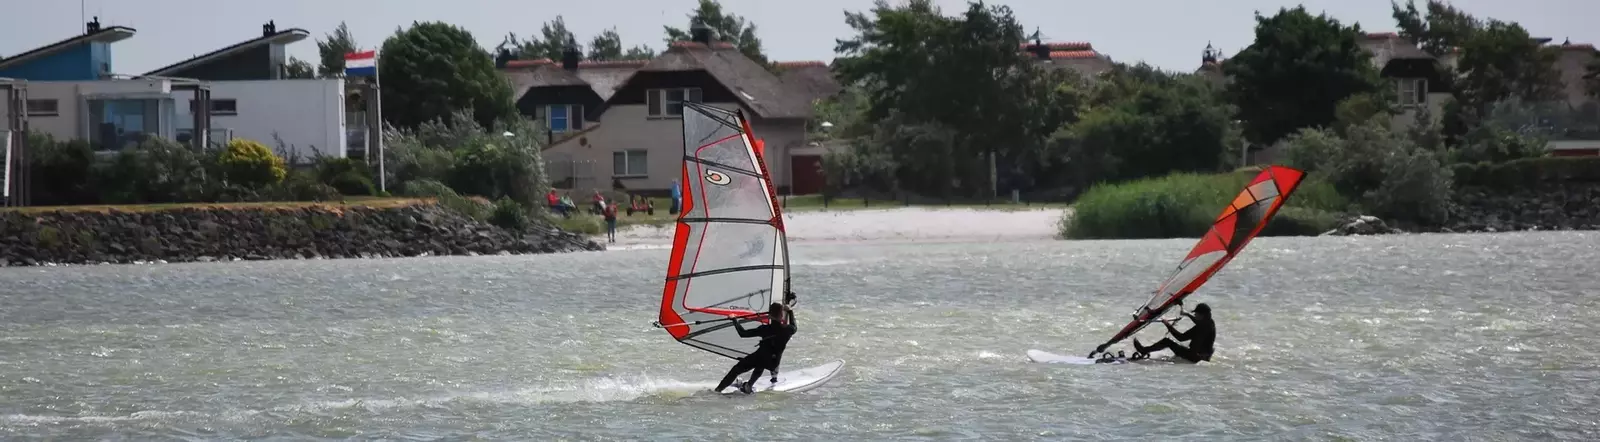 Onze tips voor een windsurf vakantie